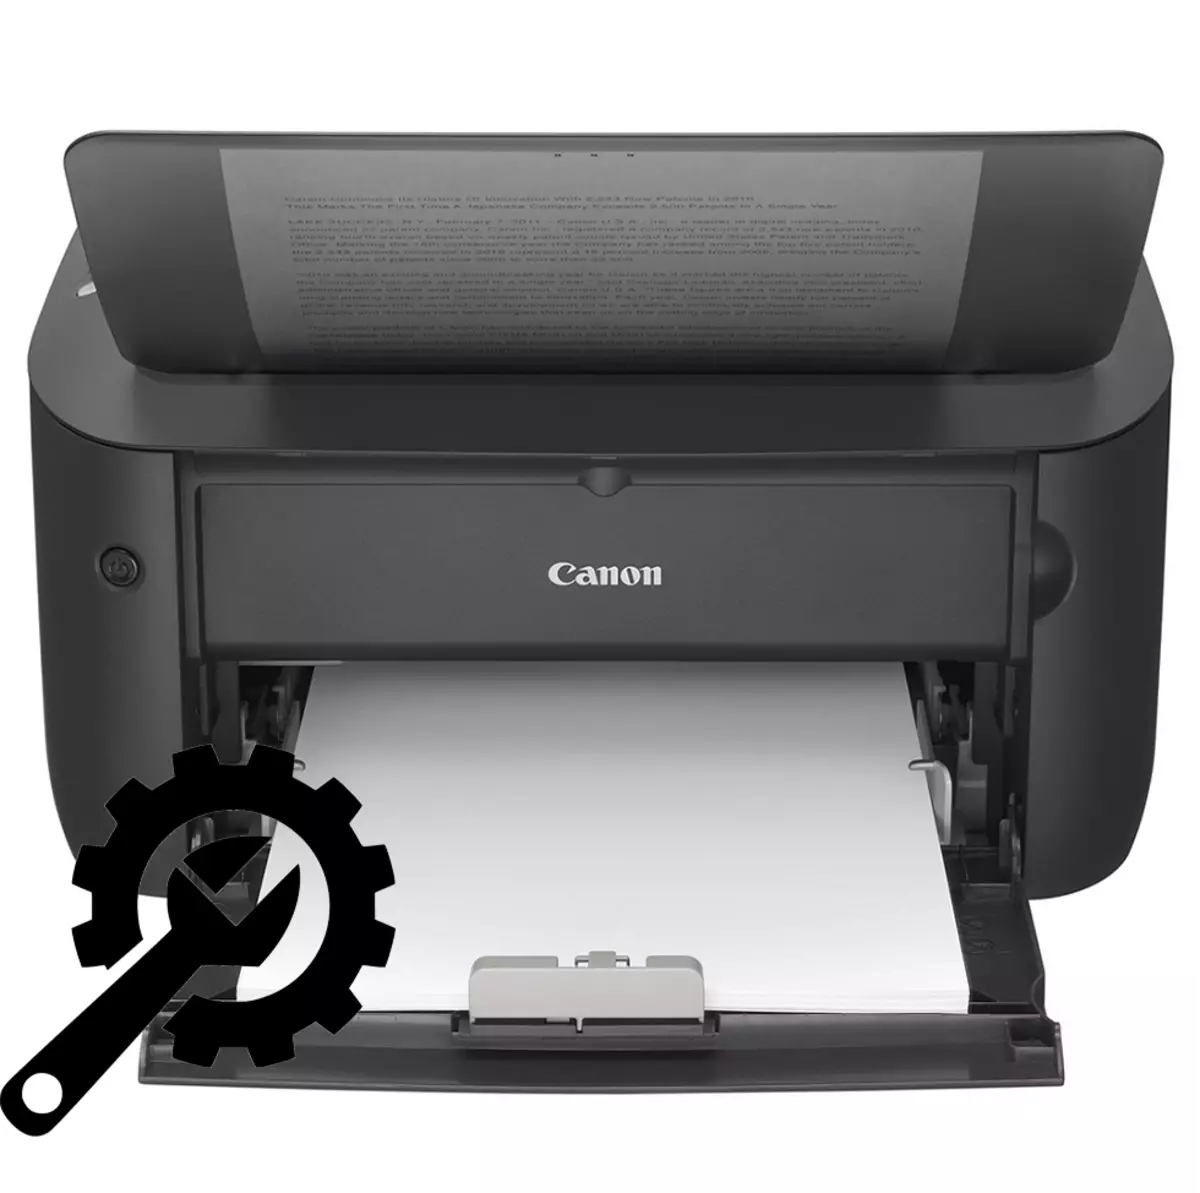 Come configurare la stampante Canon